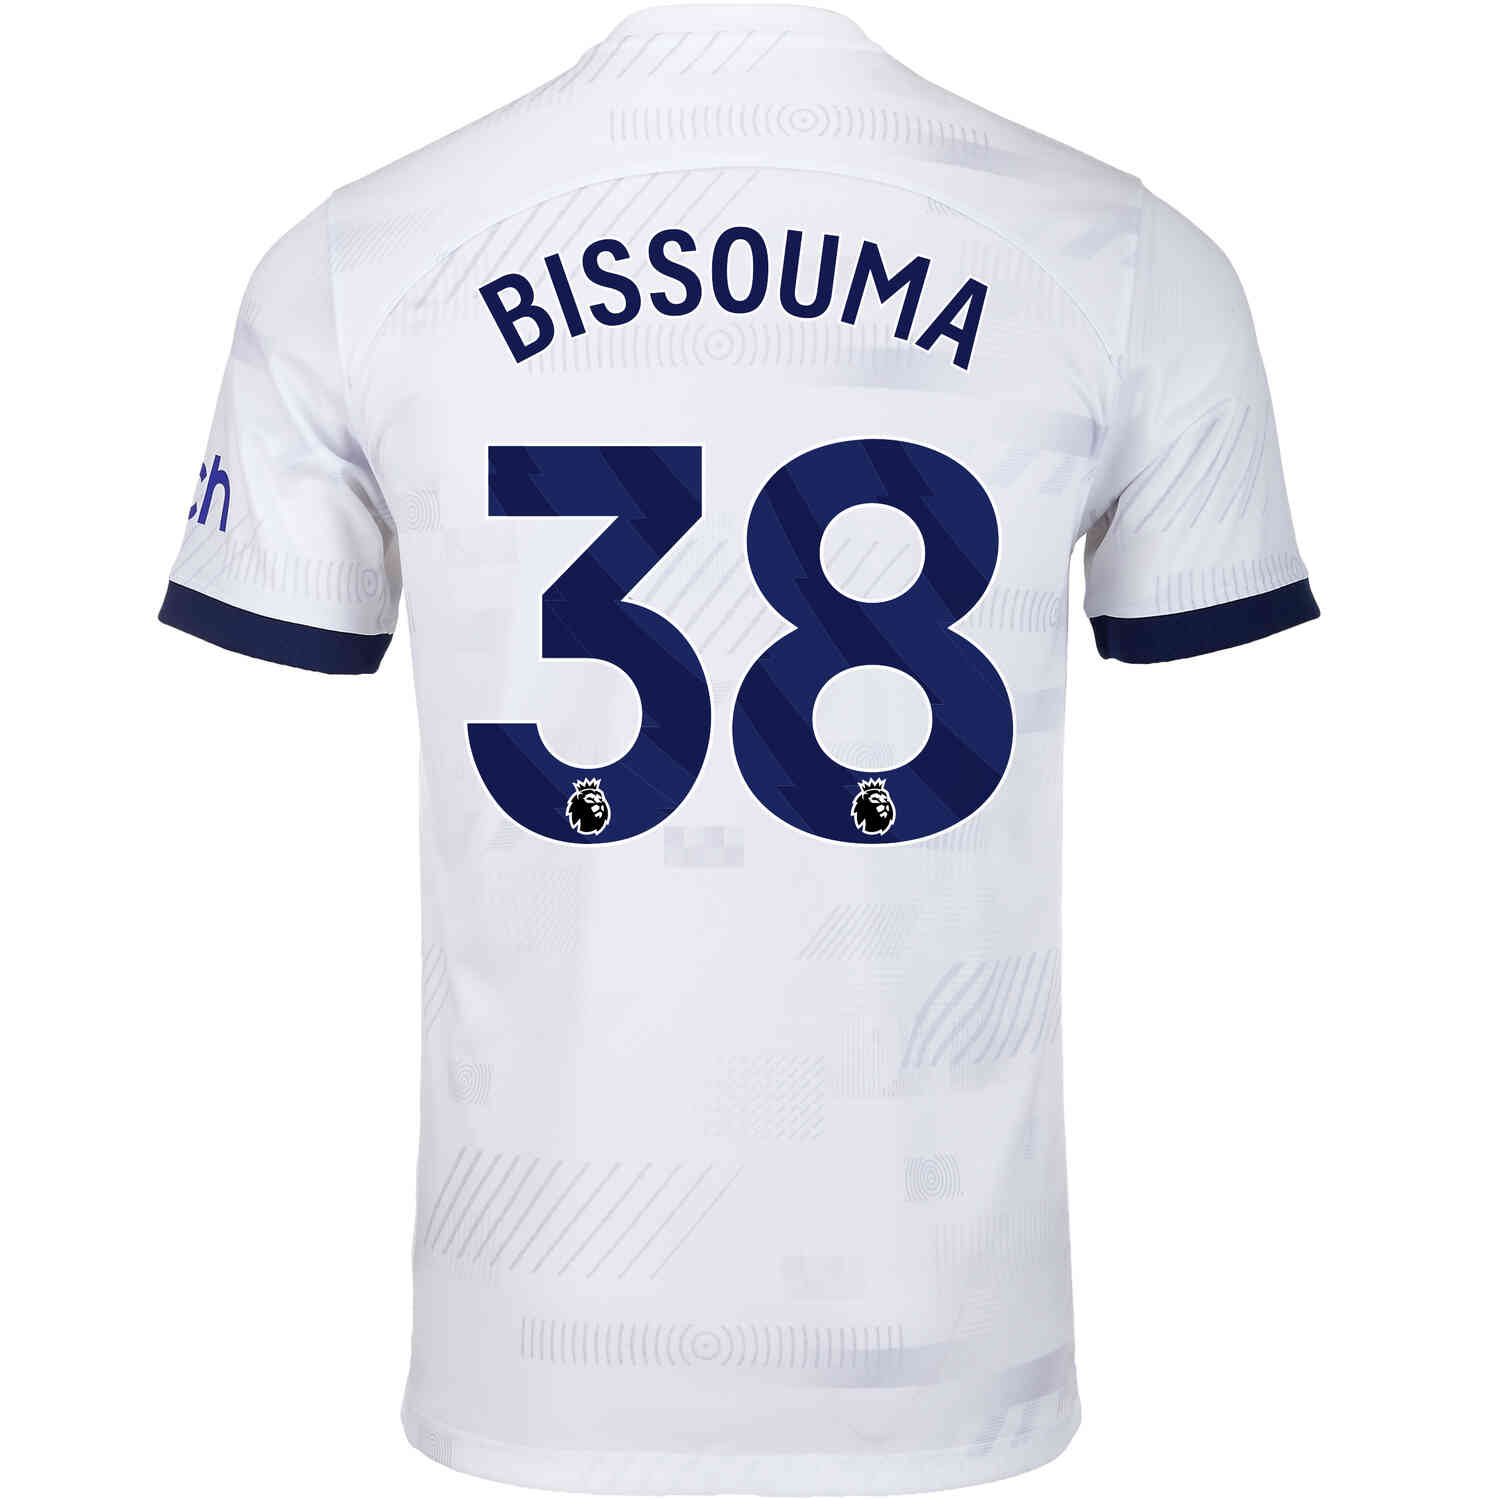 Yves Bissouma Tottenham Hotspur T-Shirt – Digital Spurs